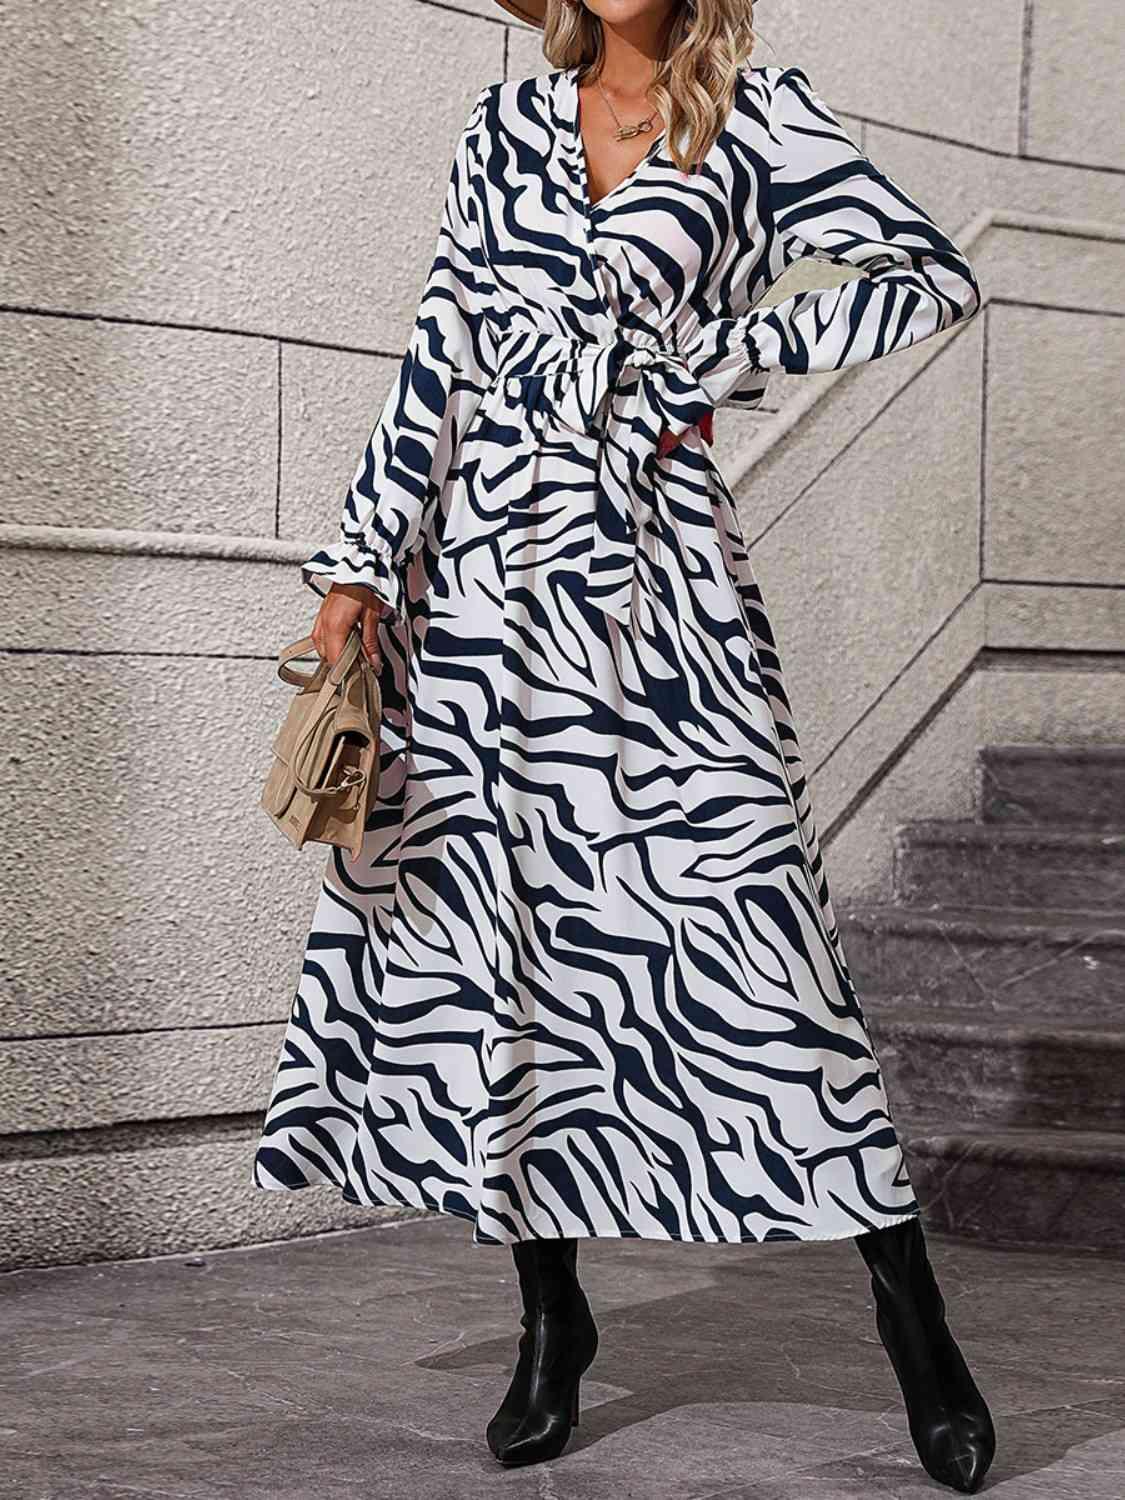 a woman in a zebra print dress